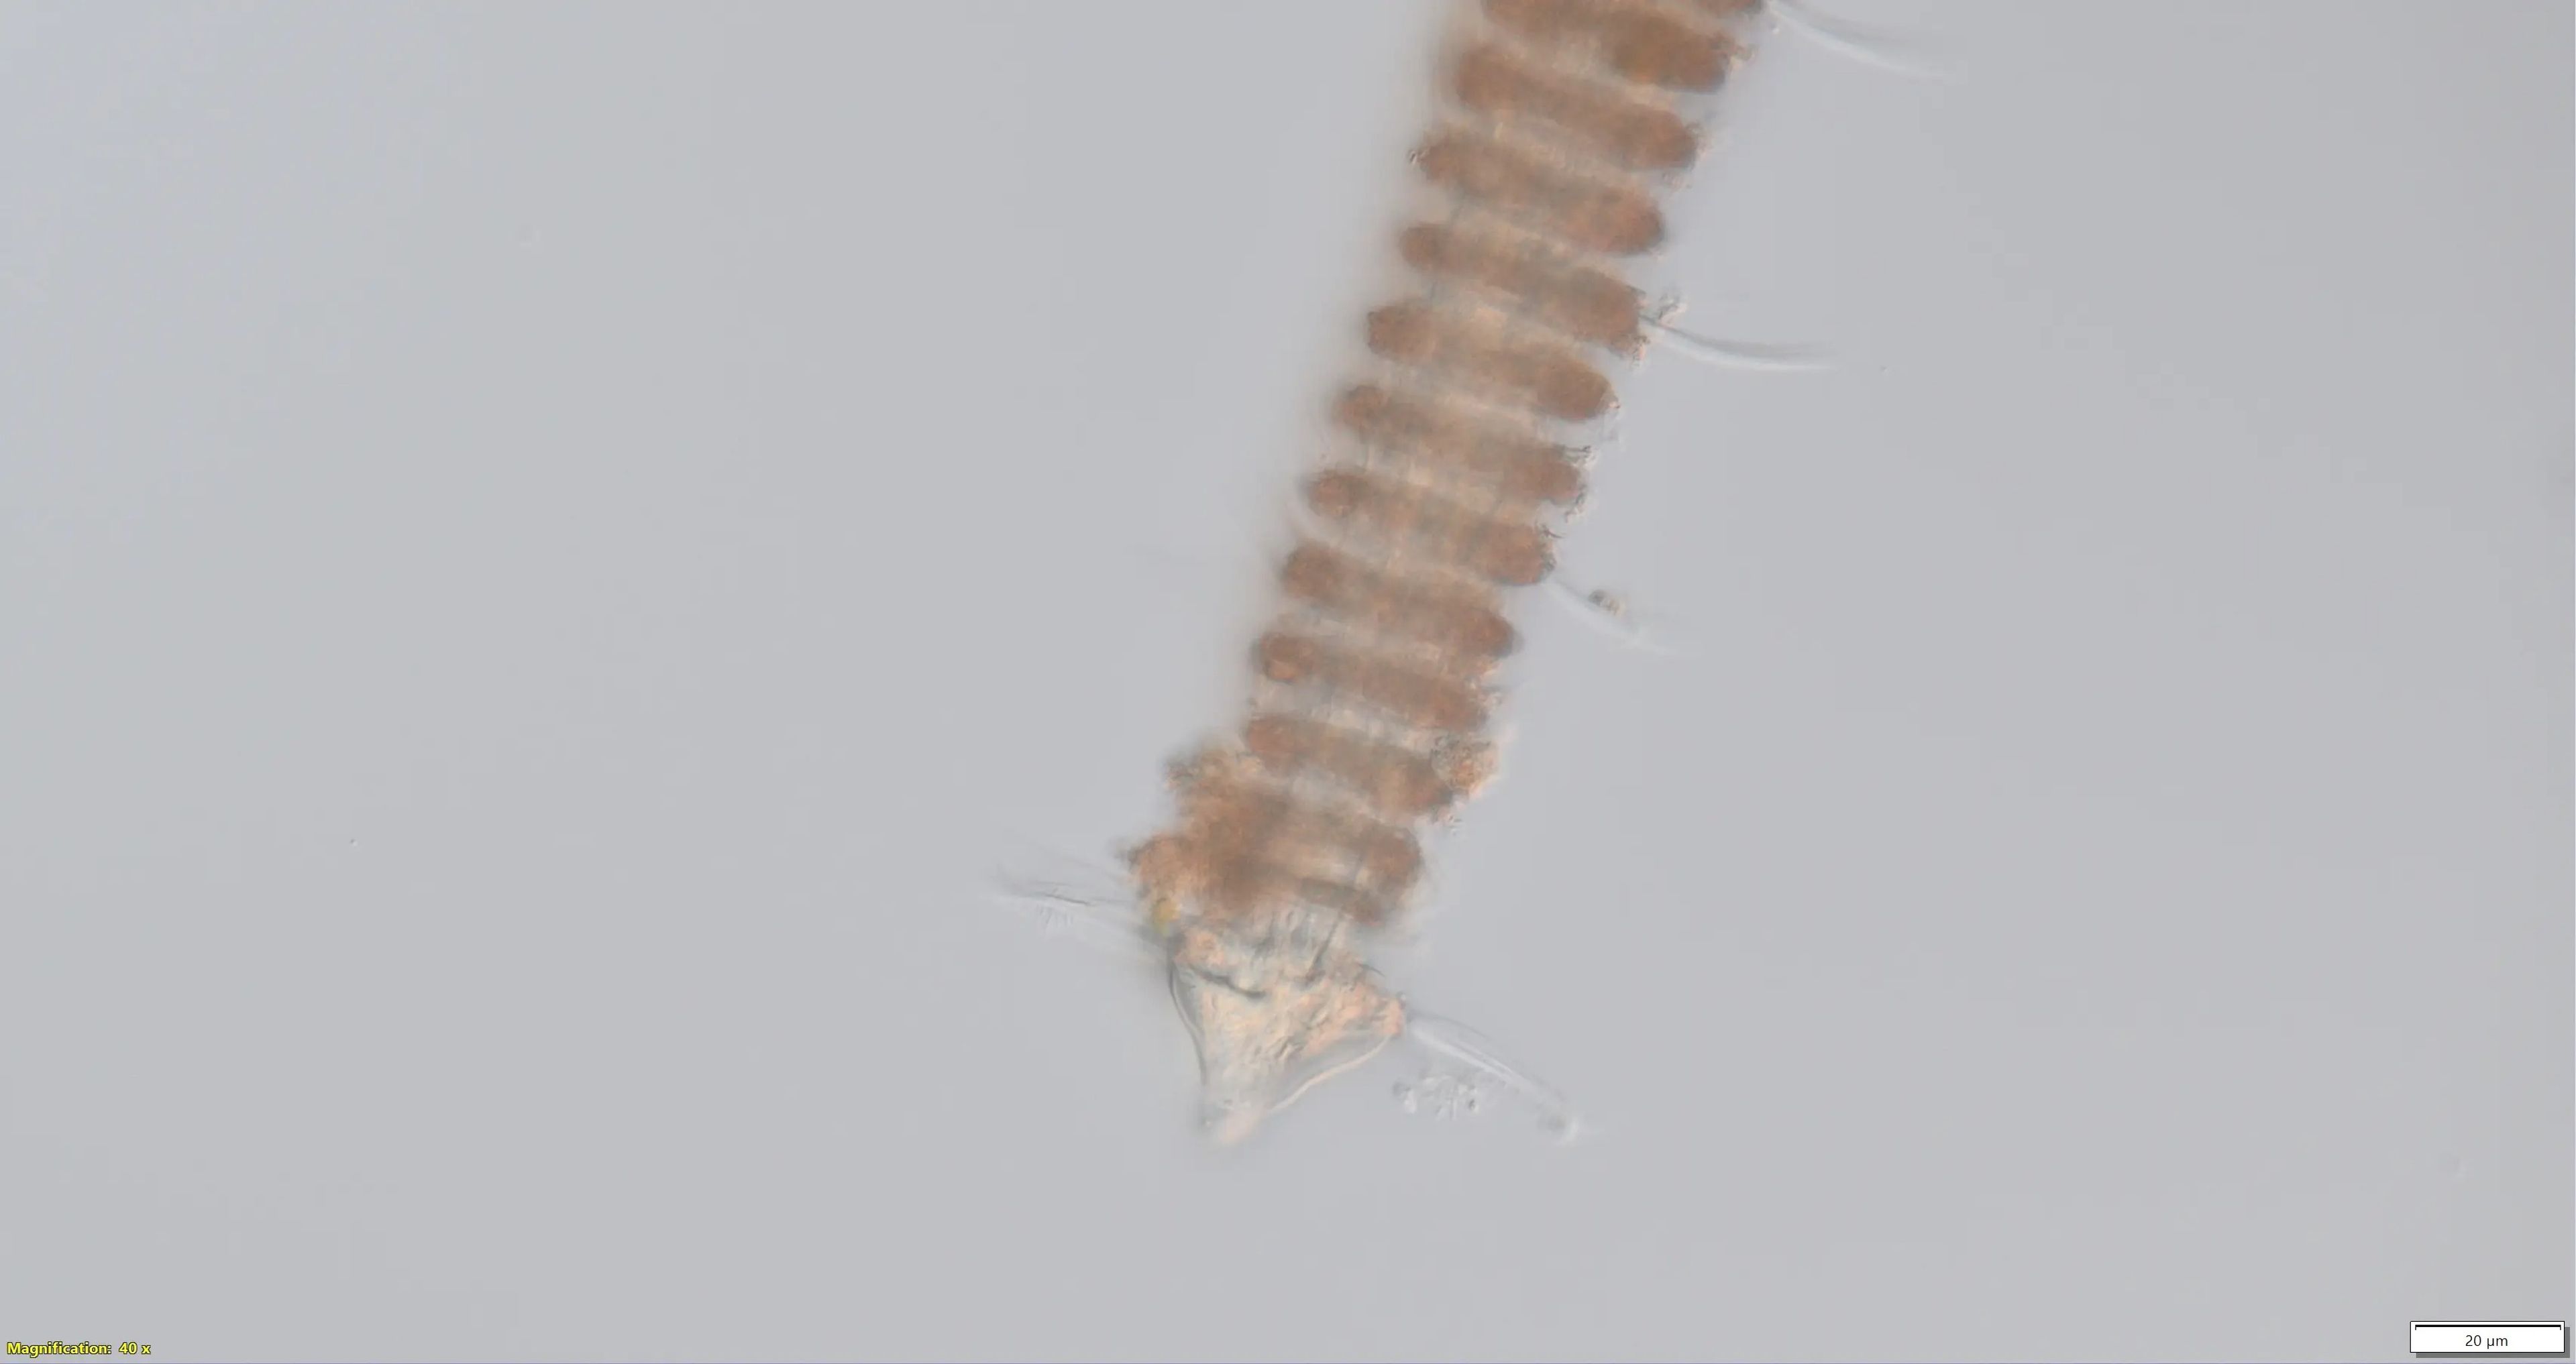 Los nematodos tricoma se distinguen por su cabeza y cuerpo triangulares que parecen anillos circulares.